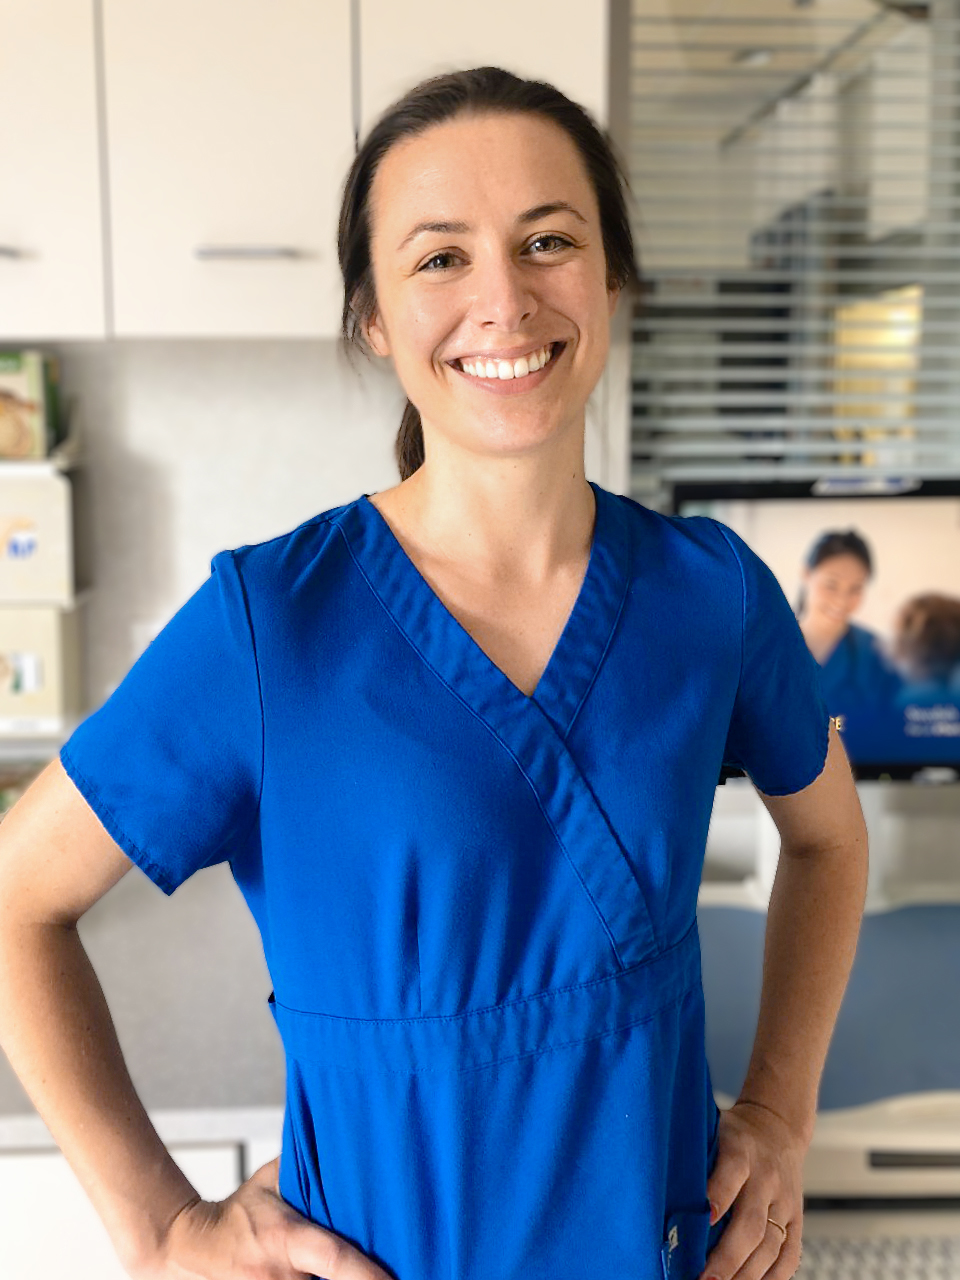 Woman wearing blue nursing scrubs in clinic.